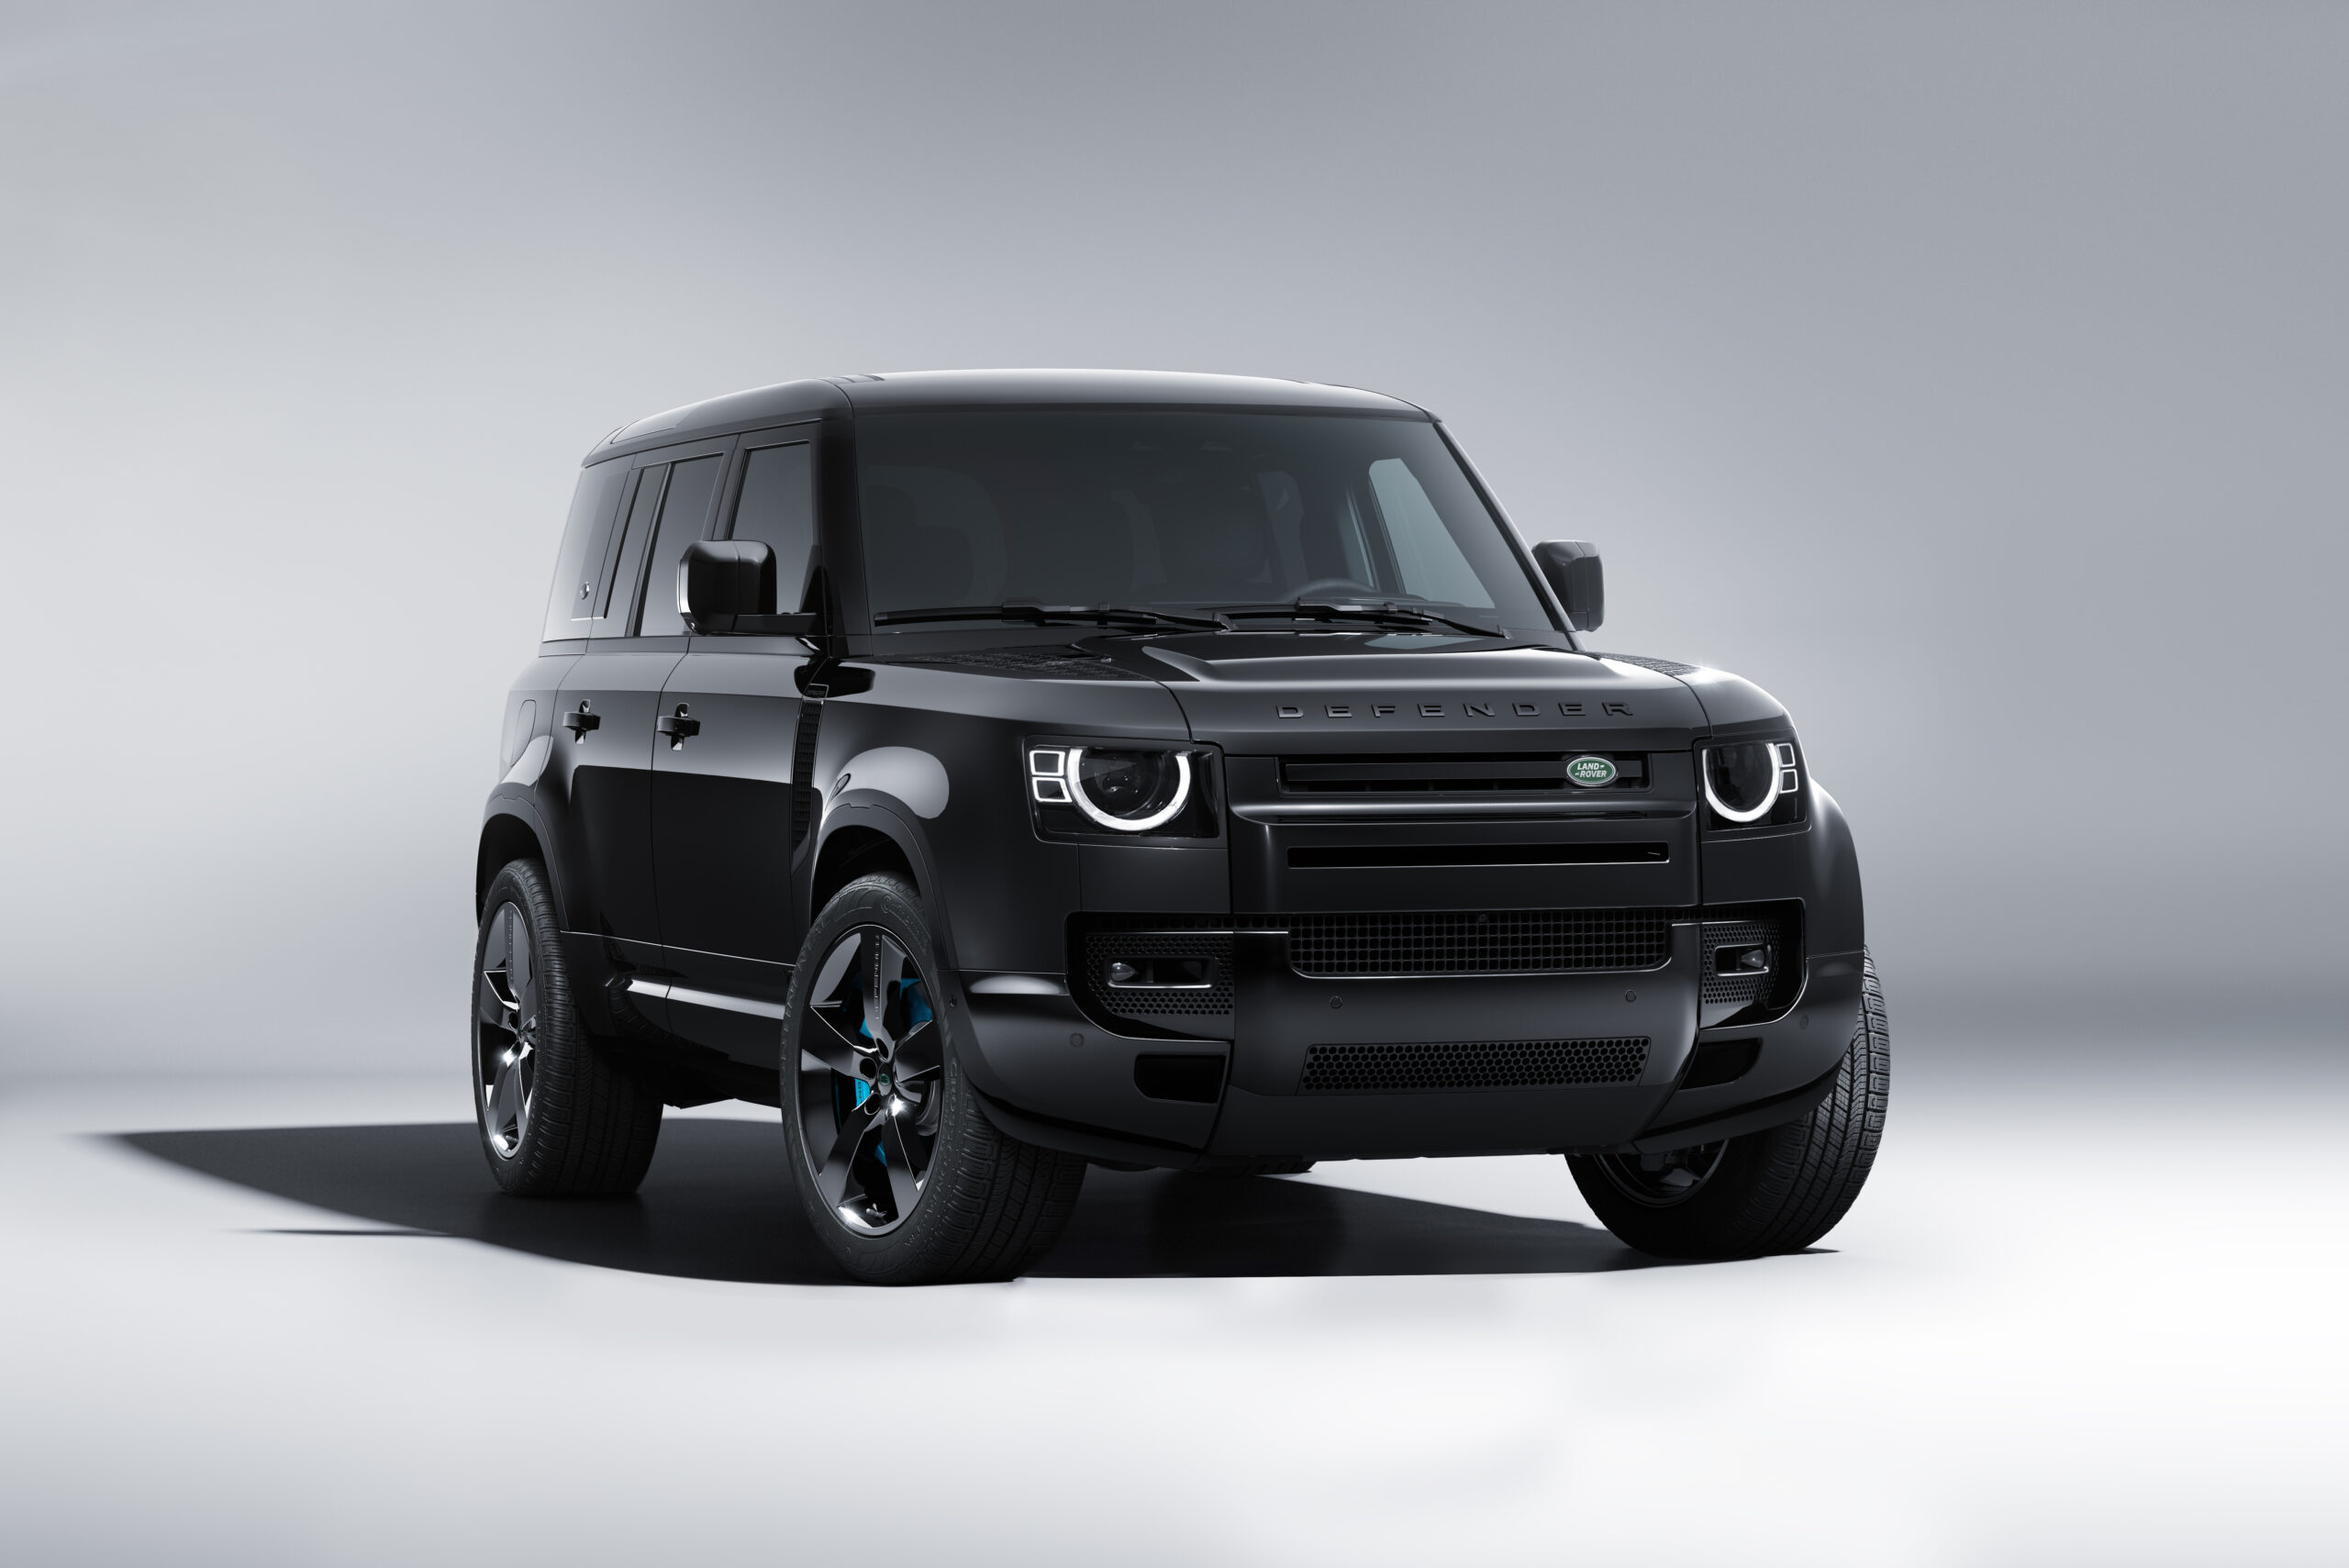 La Land Rover Defender di James Bond: è V8 ed è ispirata a “No time to die”